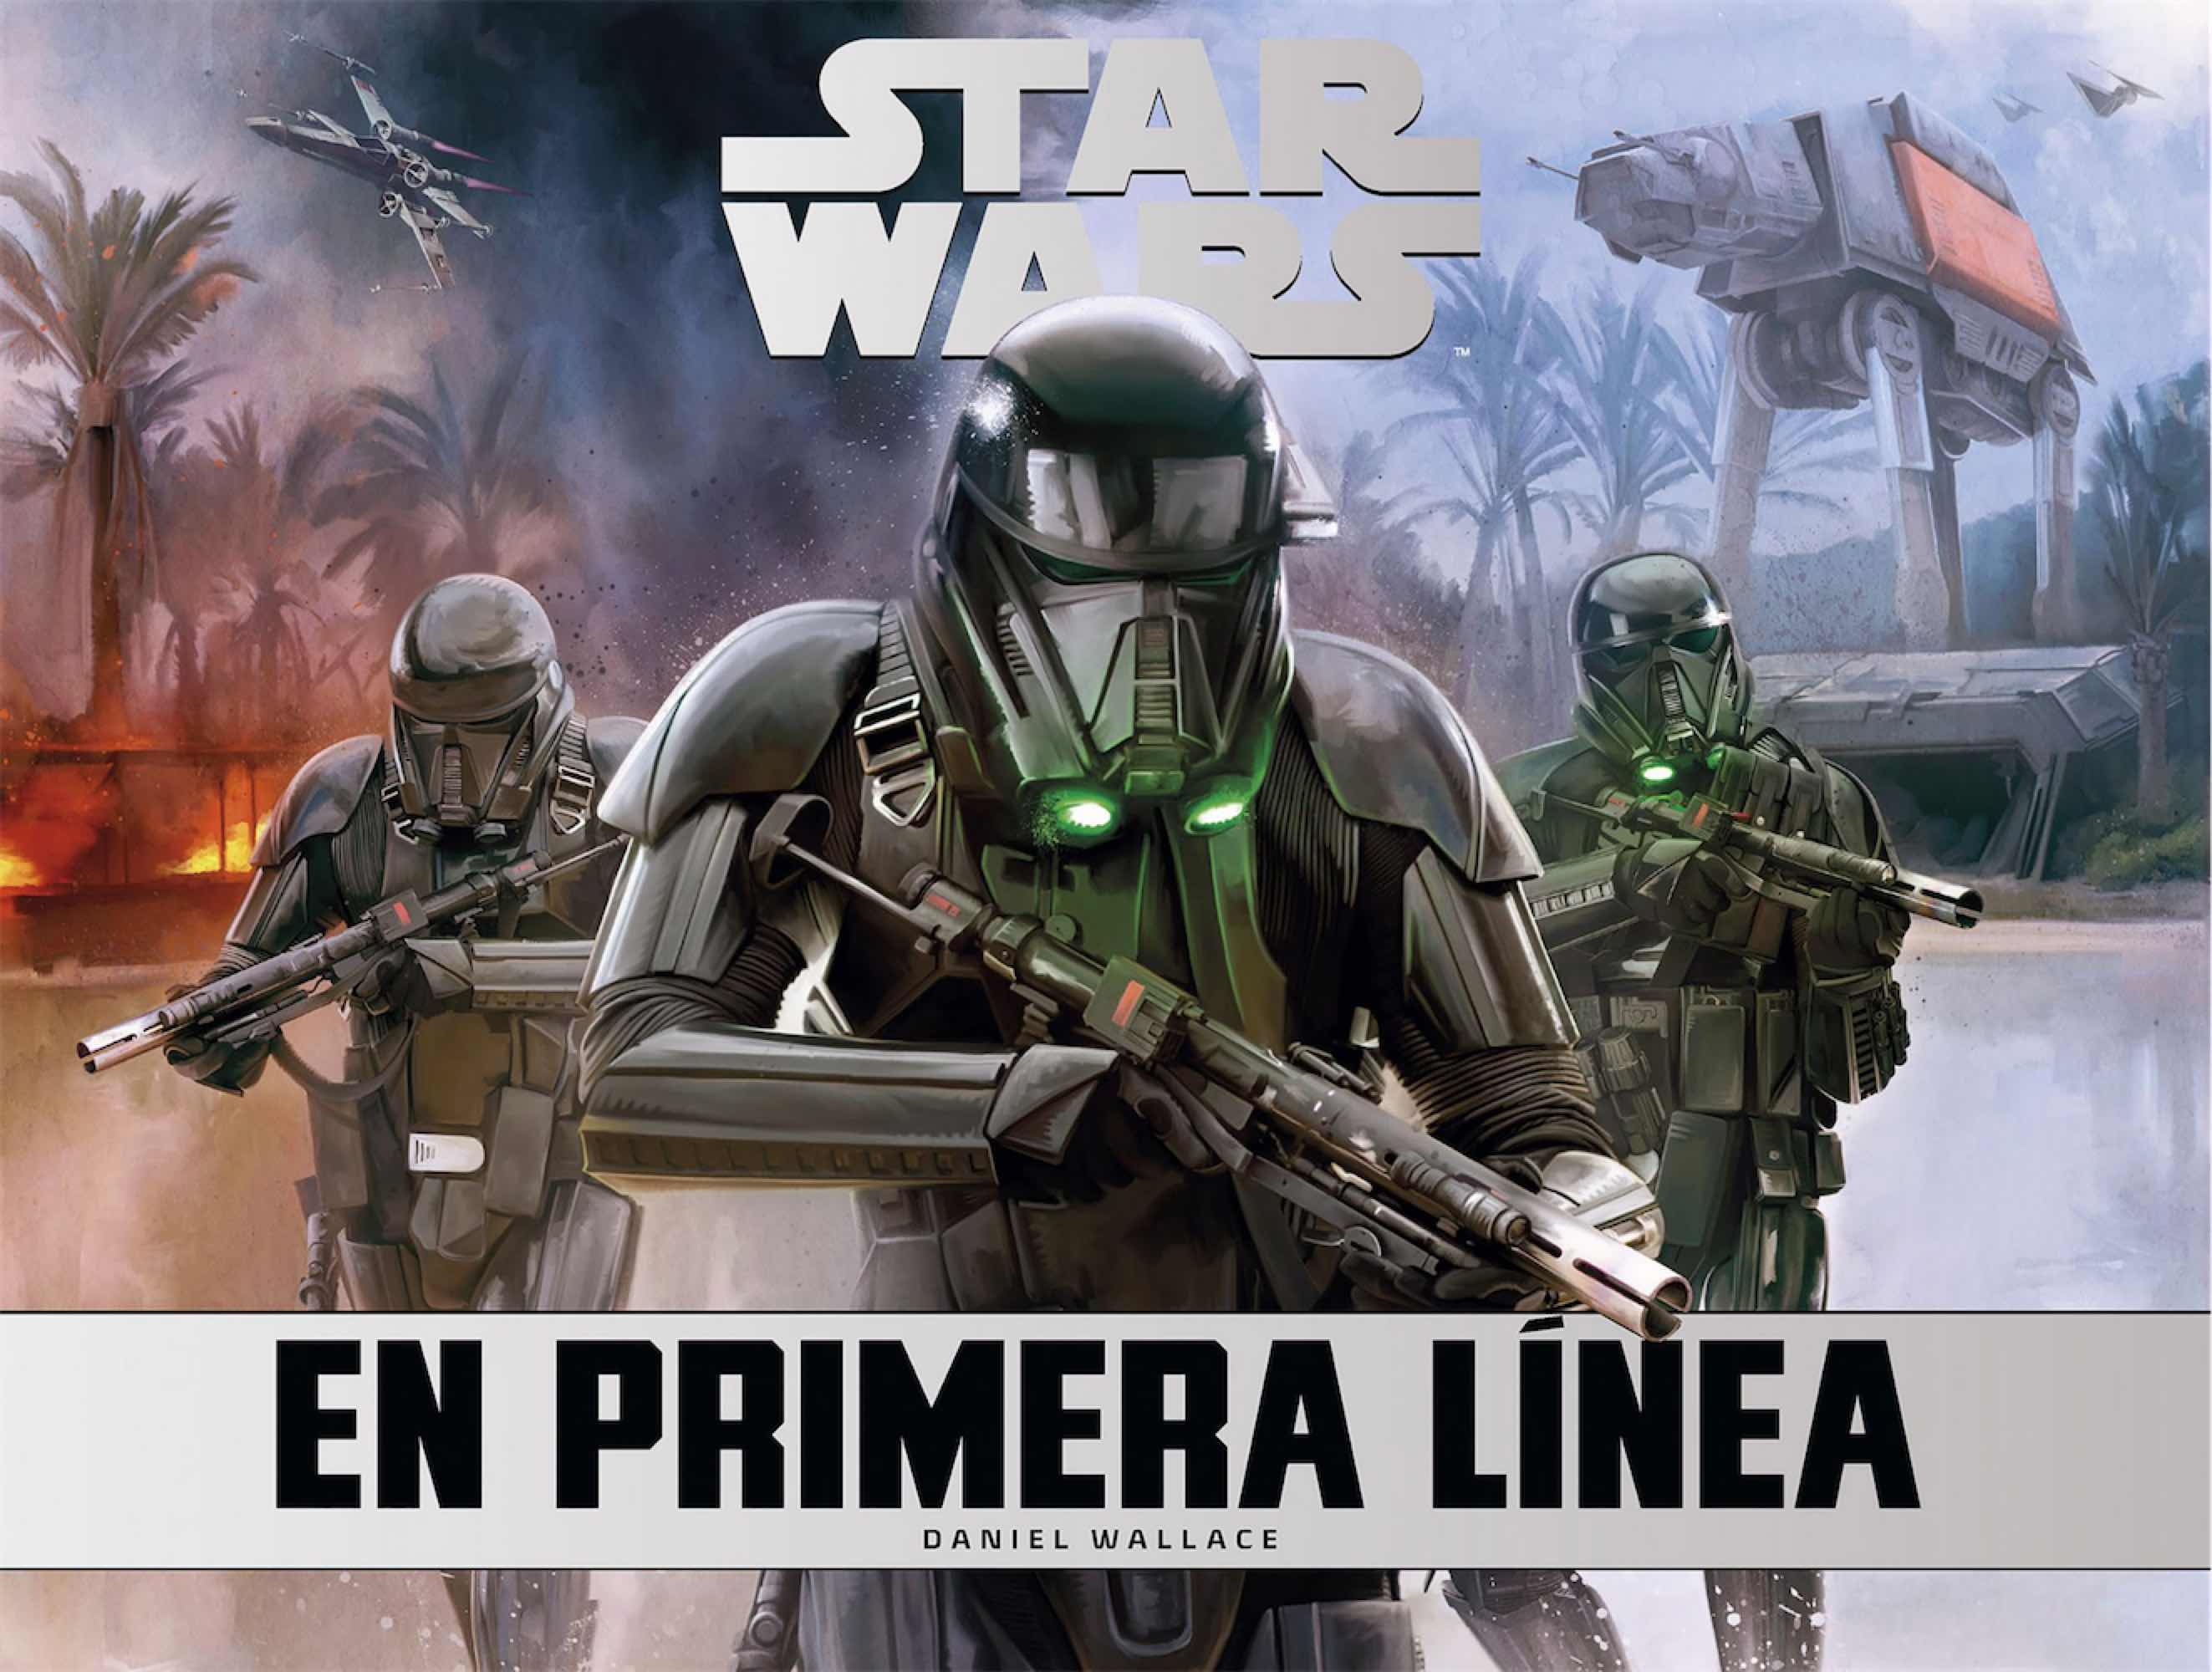 STAR WARS: EN PRIMERA LINEA